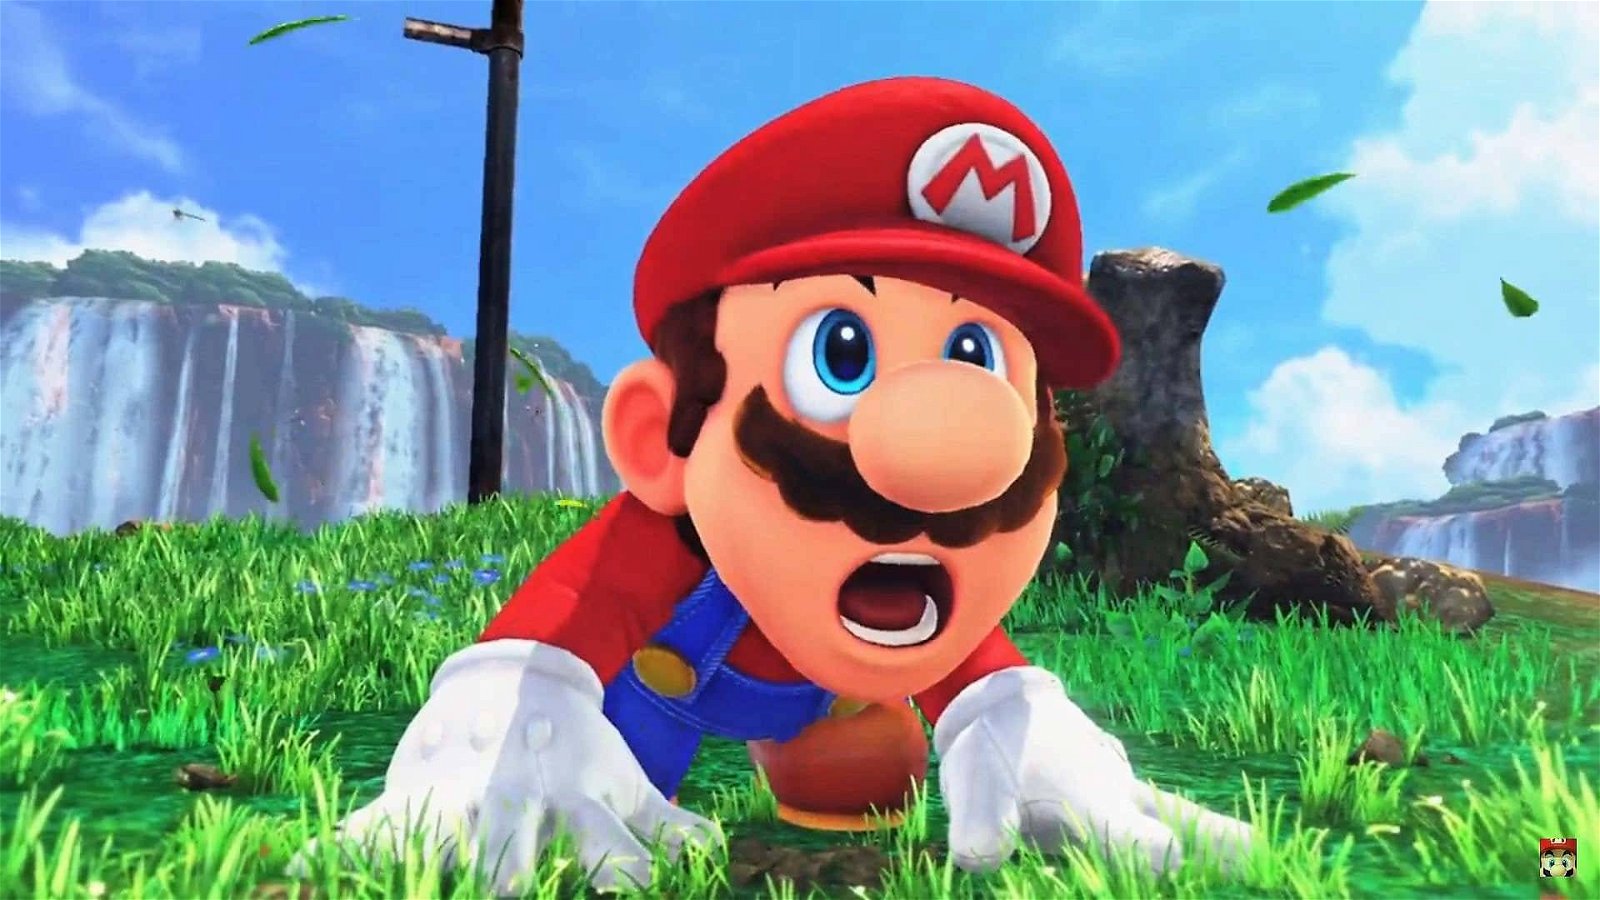 Immagine di Super Mario 35th Anniversary: nuovo indizio anticipa l'annuncio?